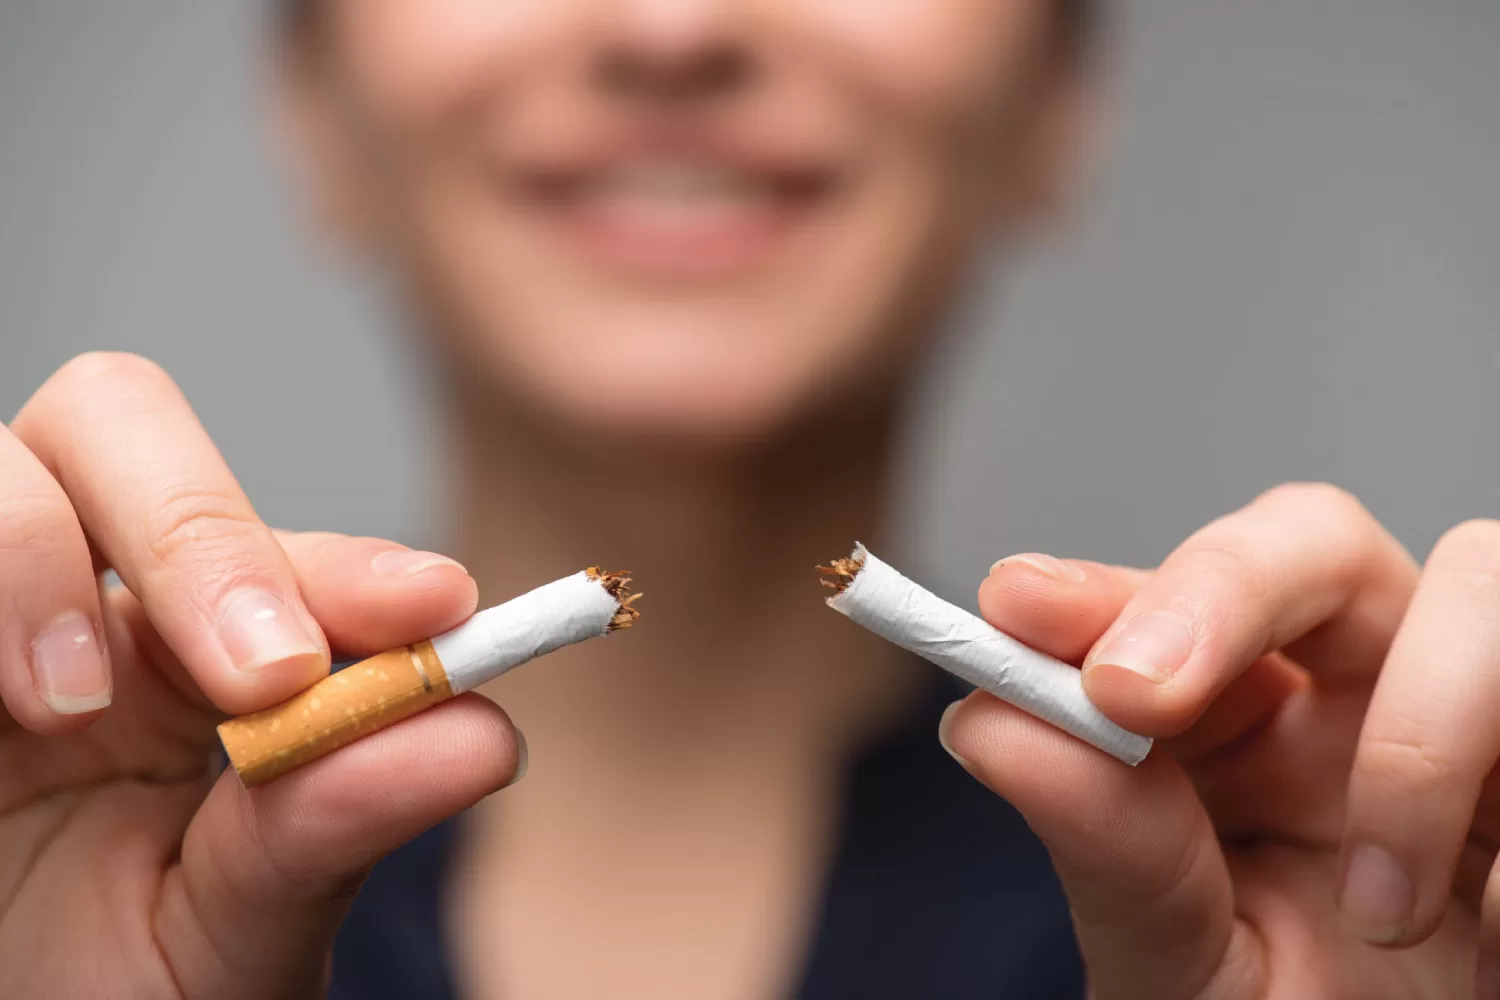 Eczacılar Hastaları Eğitebilir, Sigarayı Bırakma Danışmanlığı Sağlayabilir